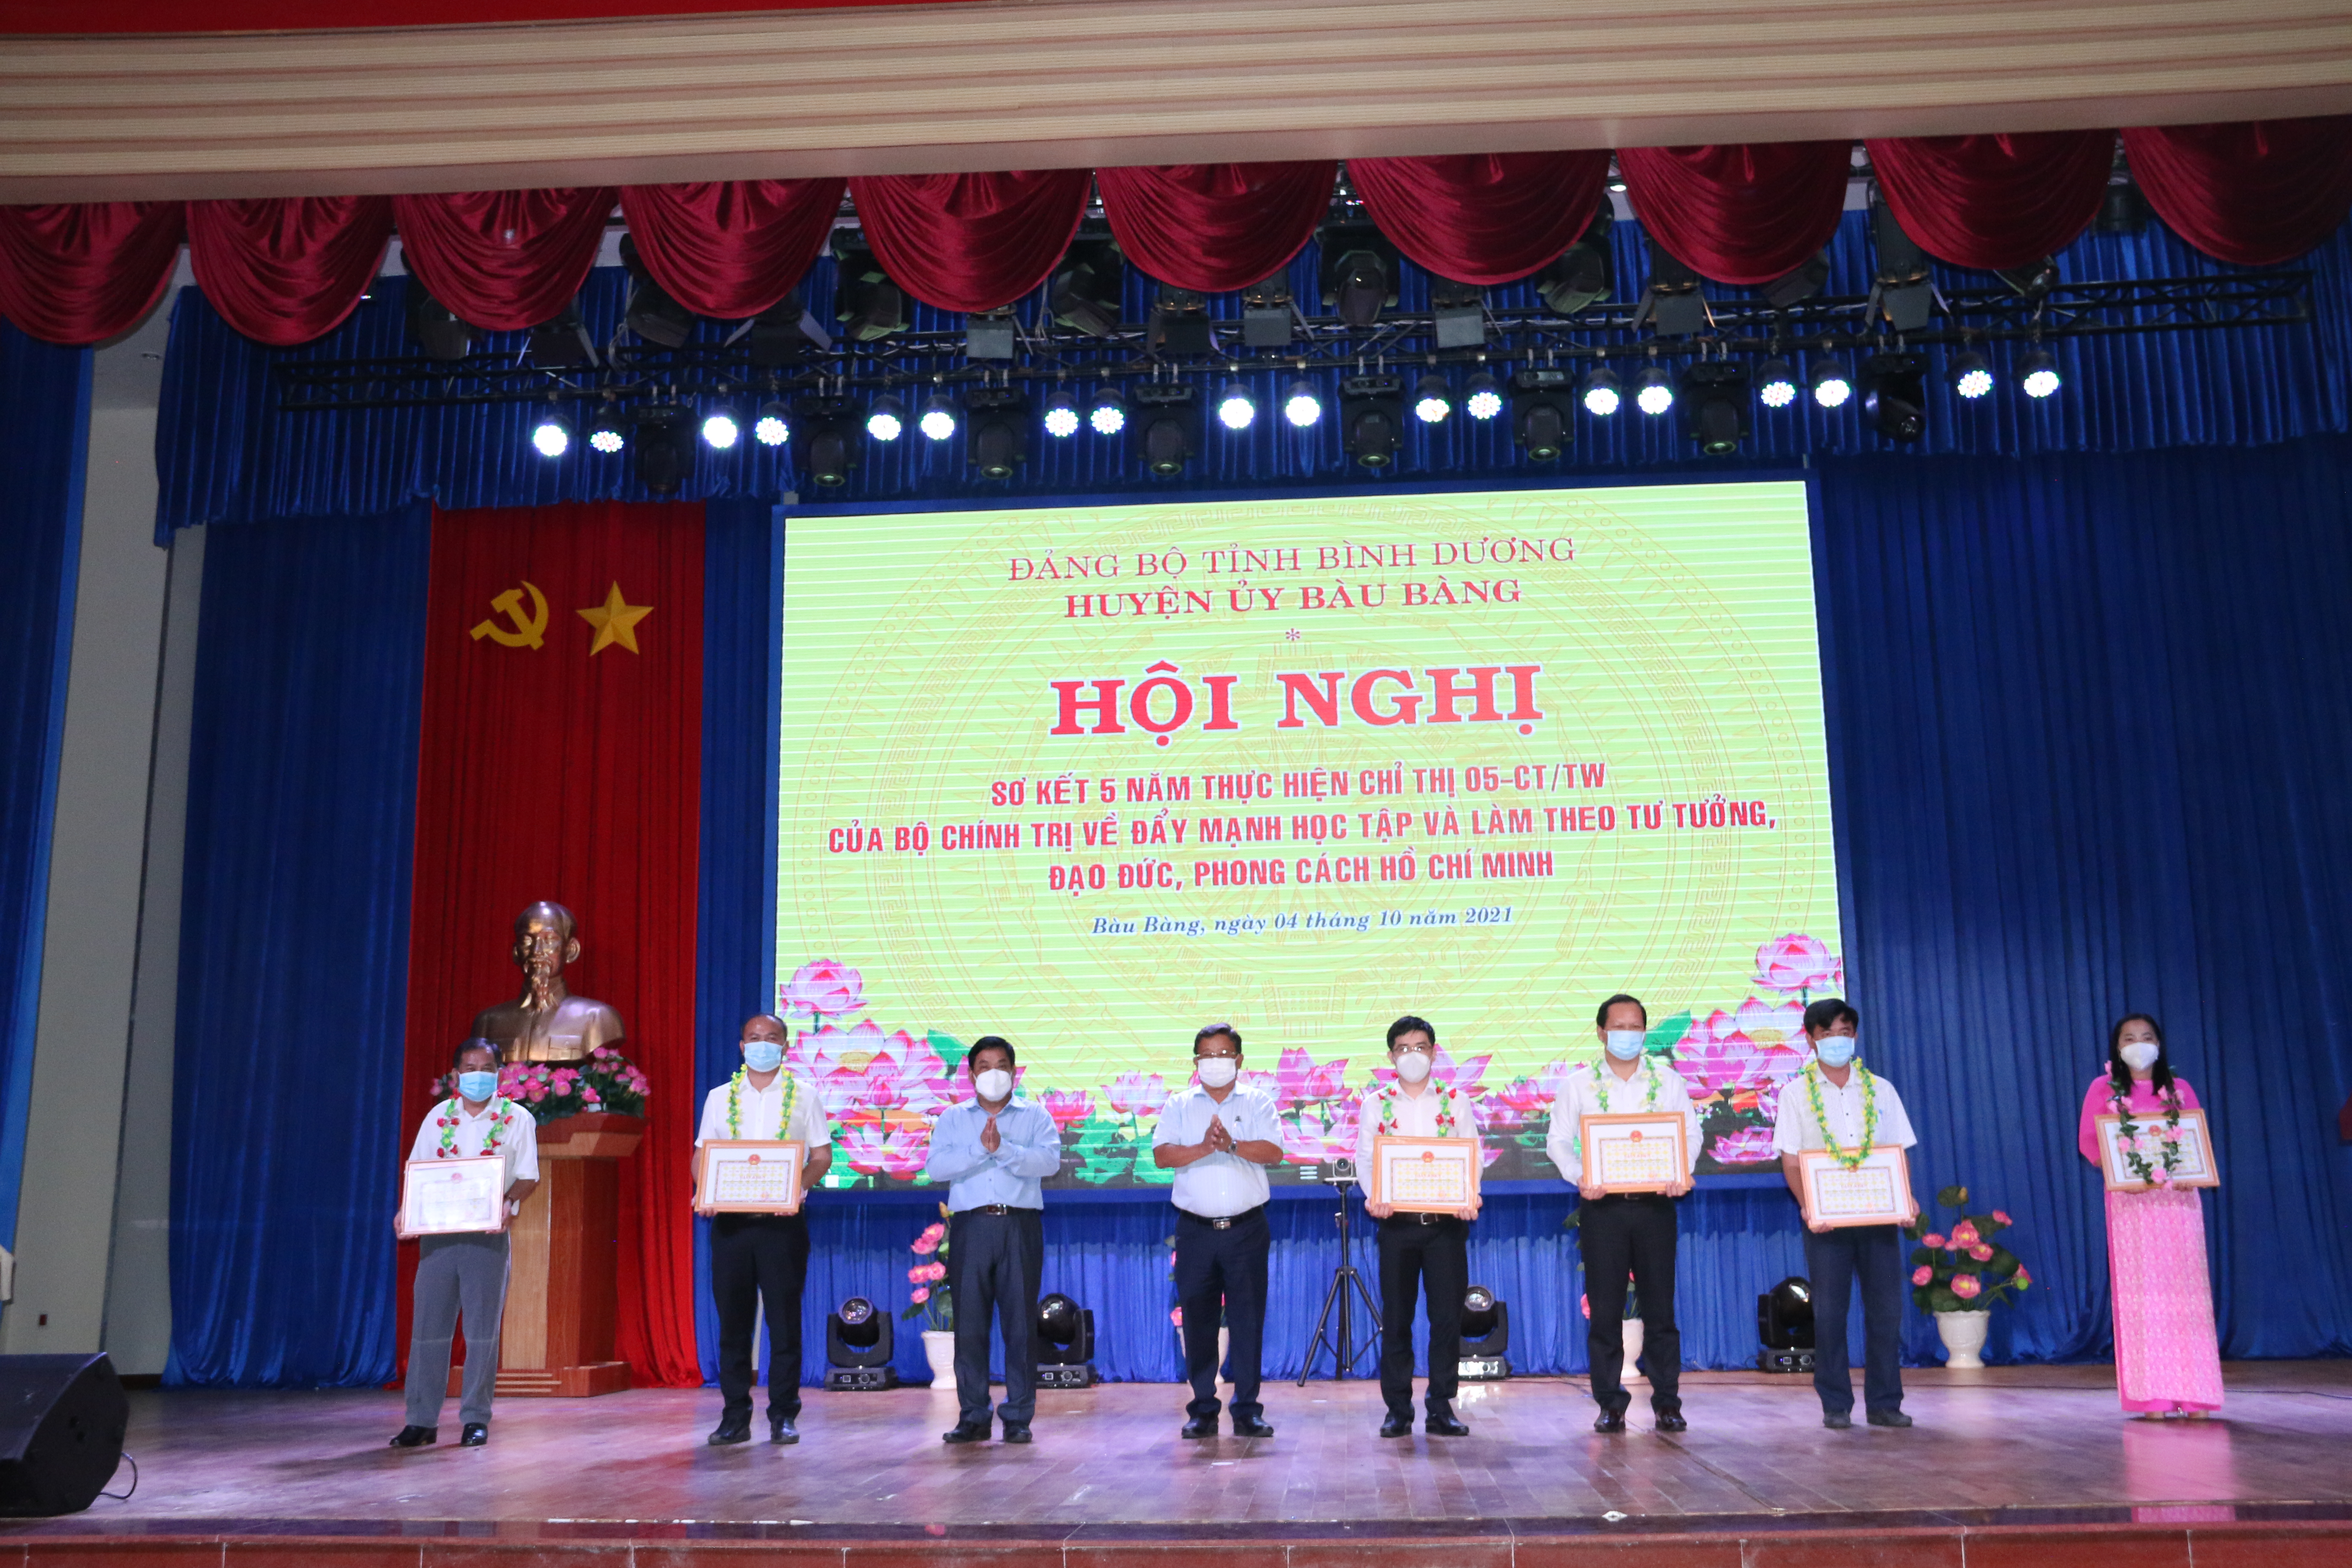 Huyện ủy Bàu Bàng tổ chức hội nghị trực tuyến sơ kết 5 năm thực hiện Chỉ thị số 05-CT/TW của Bộ Chính trị (khóa XII) về “Đẩy mạnh học tập và làm theo tư tưởng, đạo đức, phong cách Hồ Chi Minh”